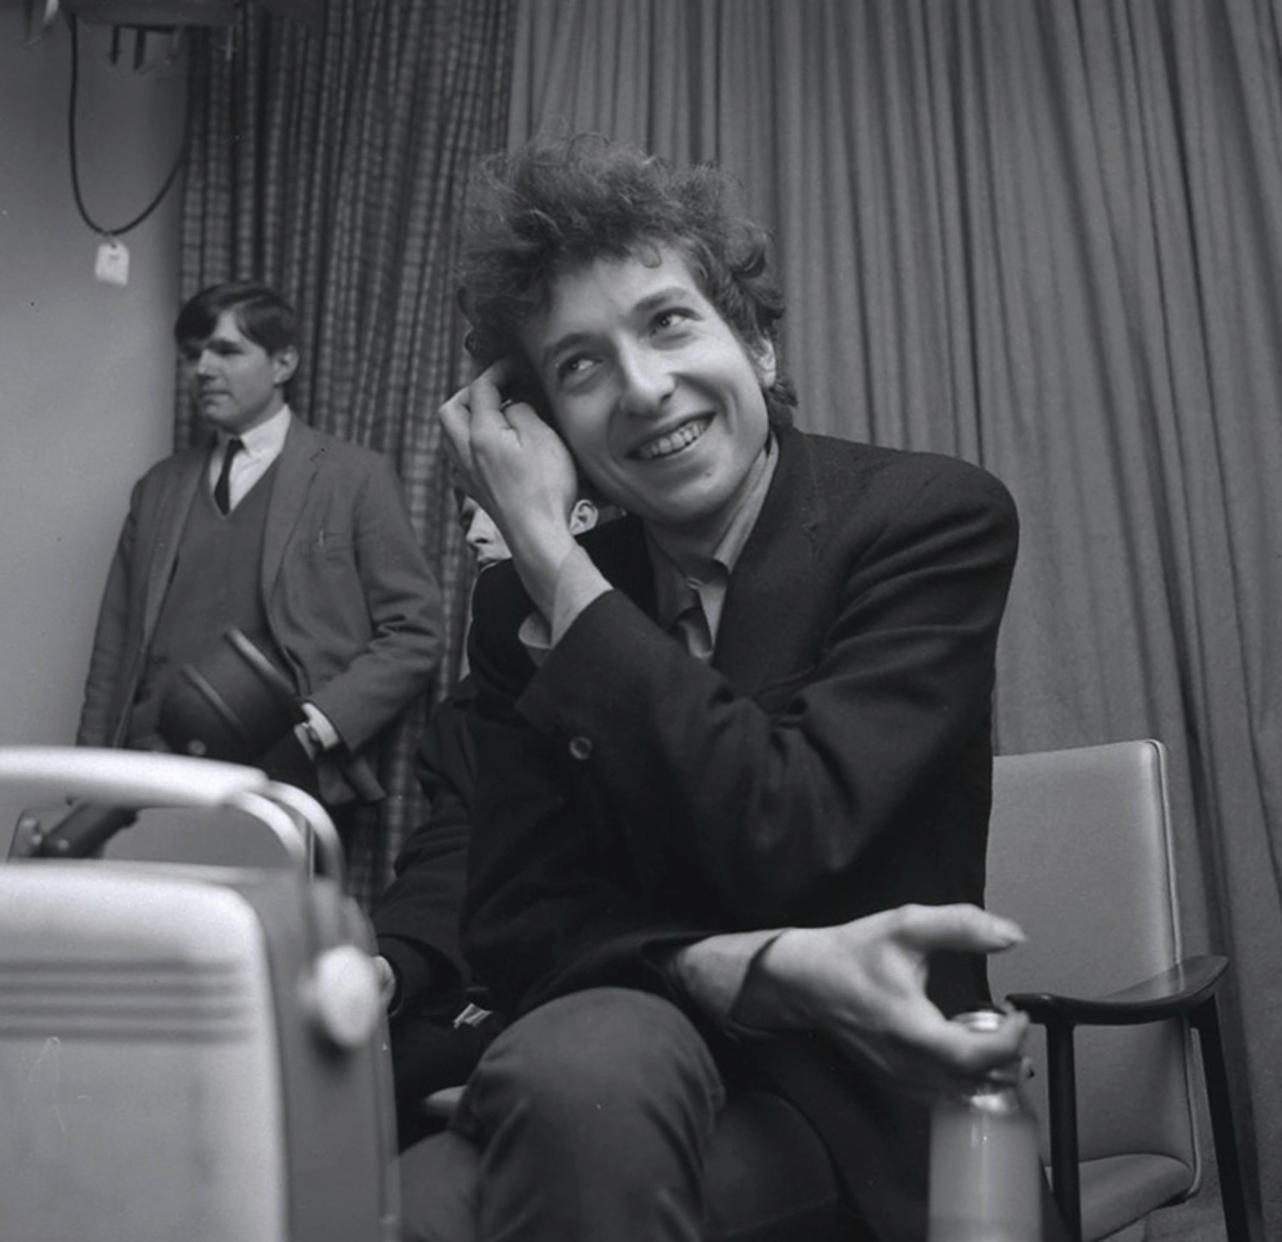 Bob Dylan's first UK tour. (Landmark / MediaPunch)